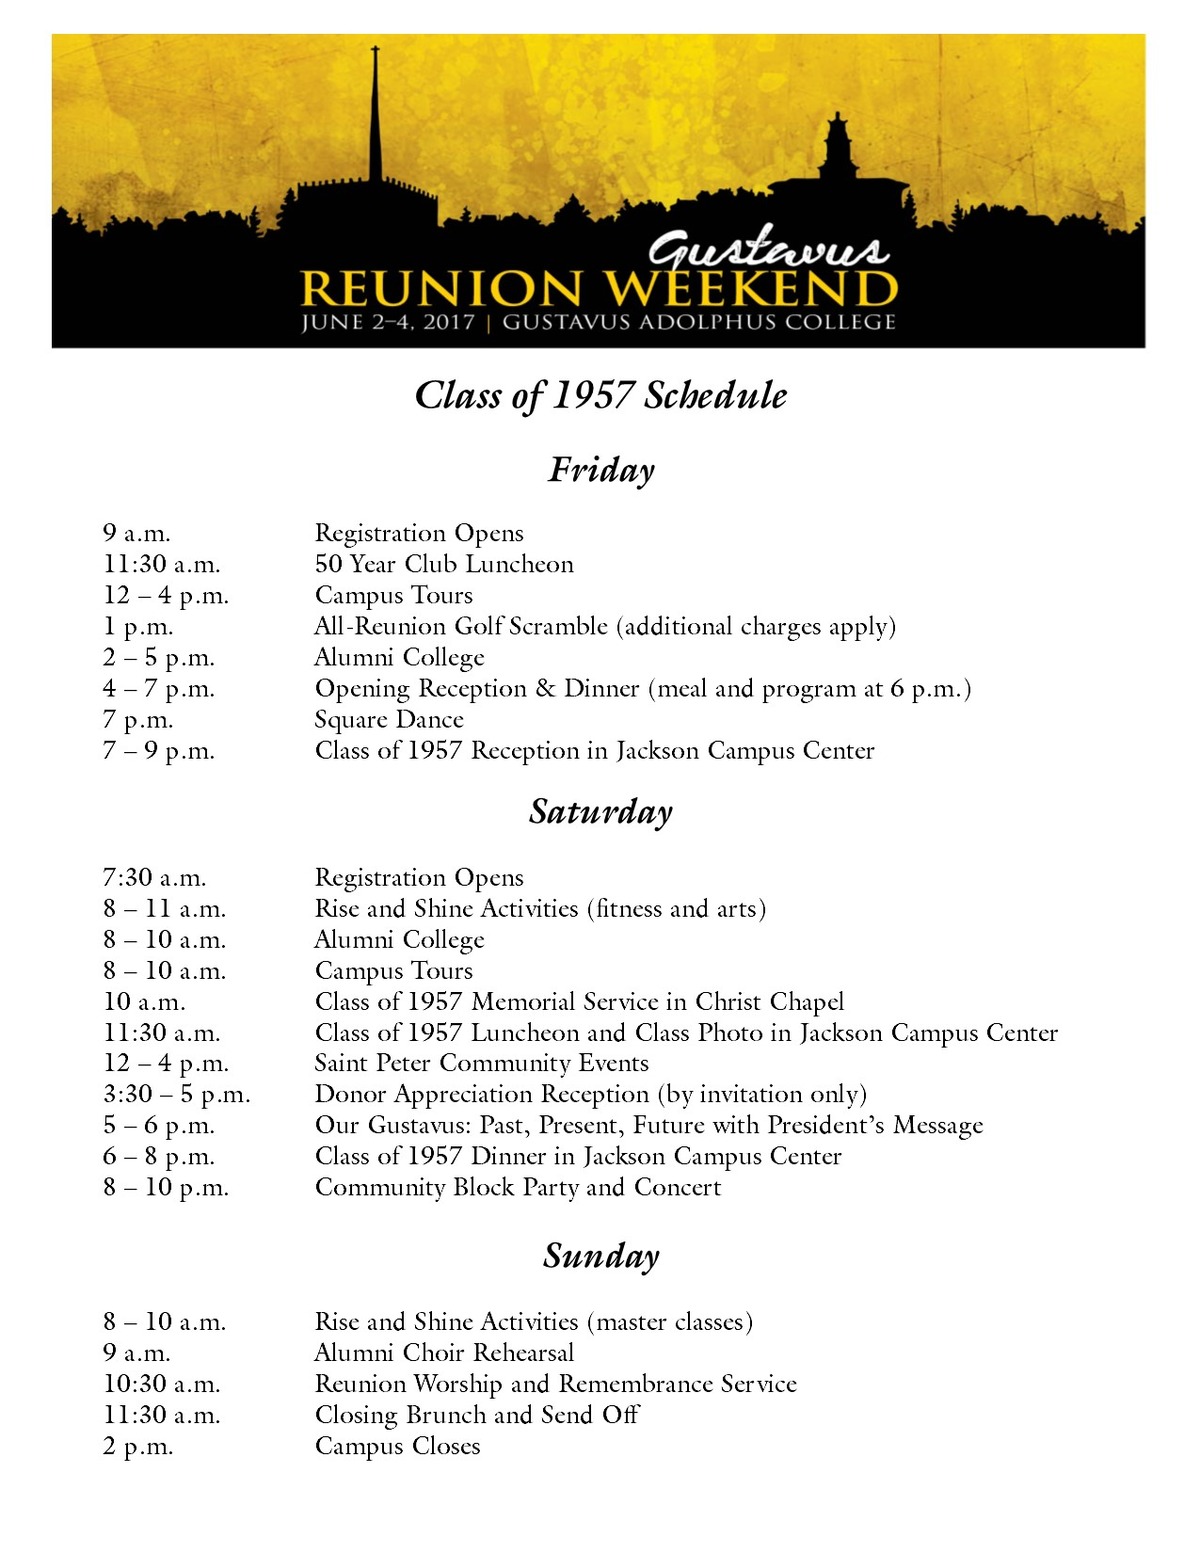 Class of 1957 Reunion Weekend Schedule